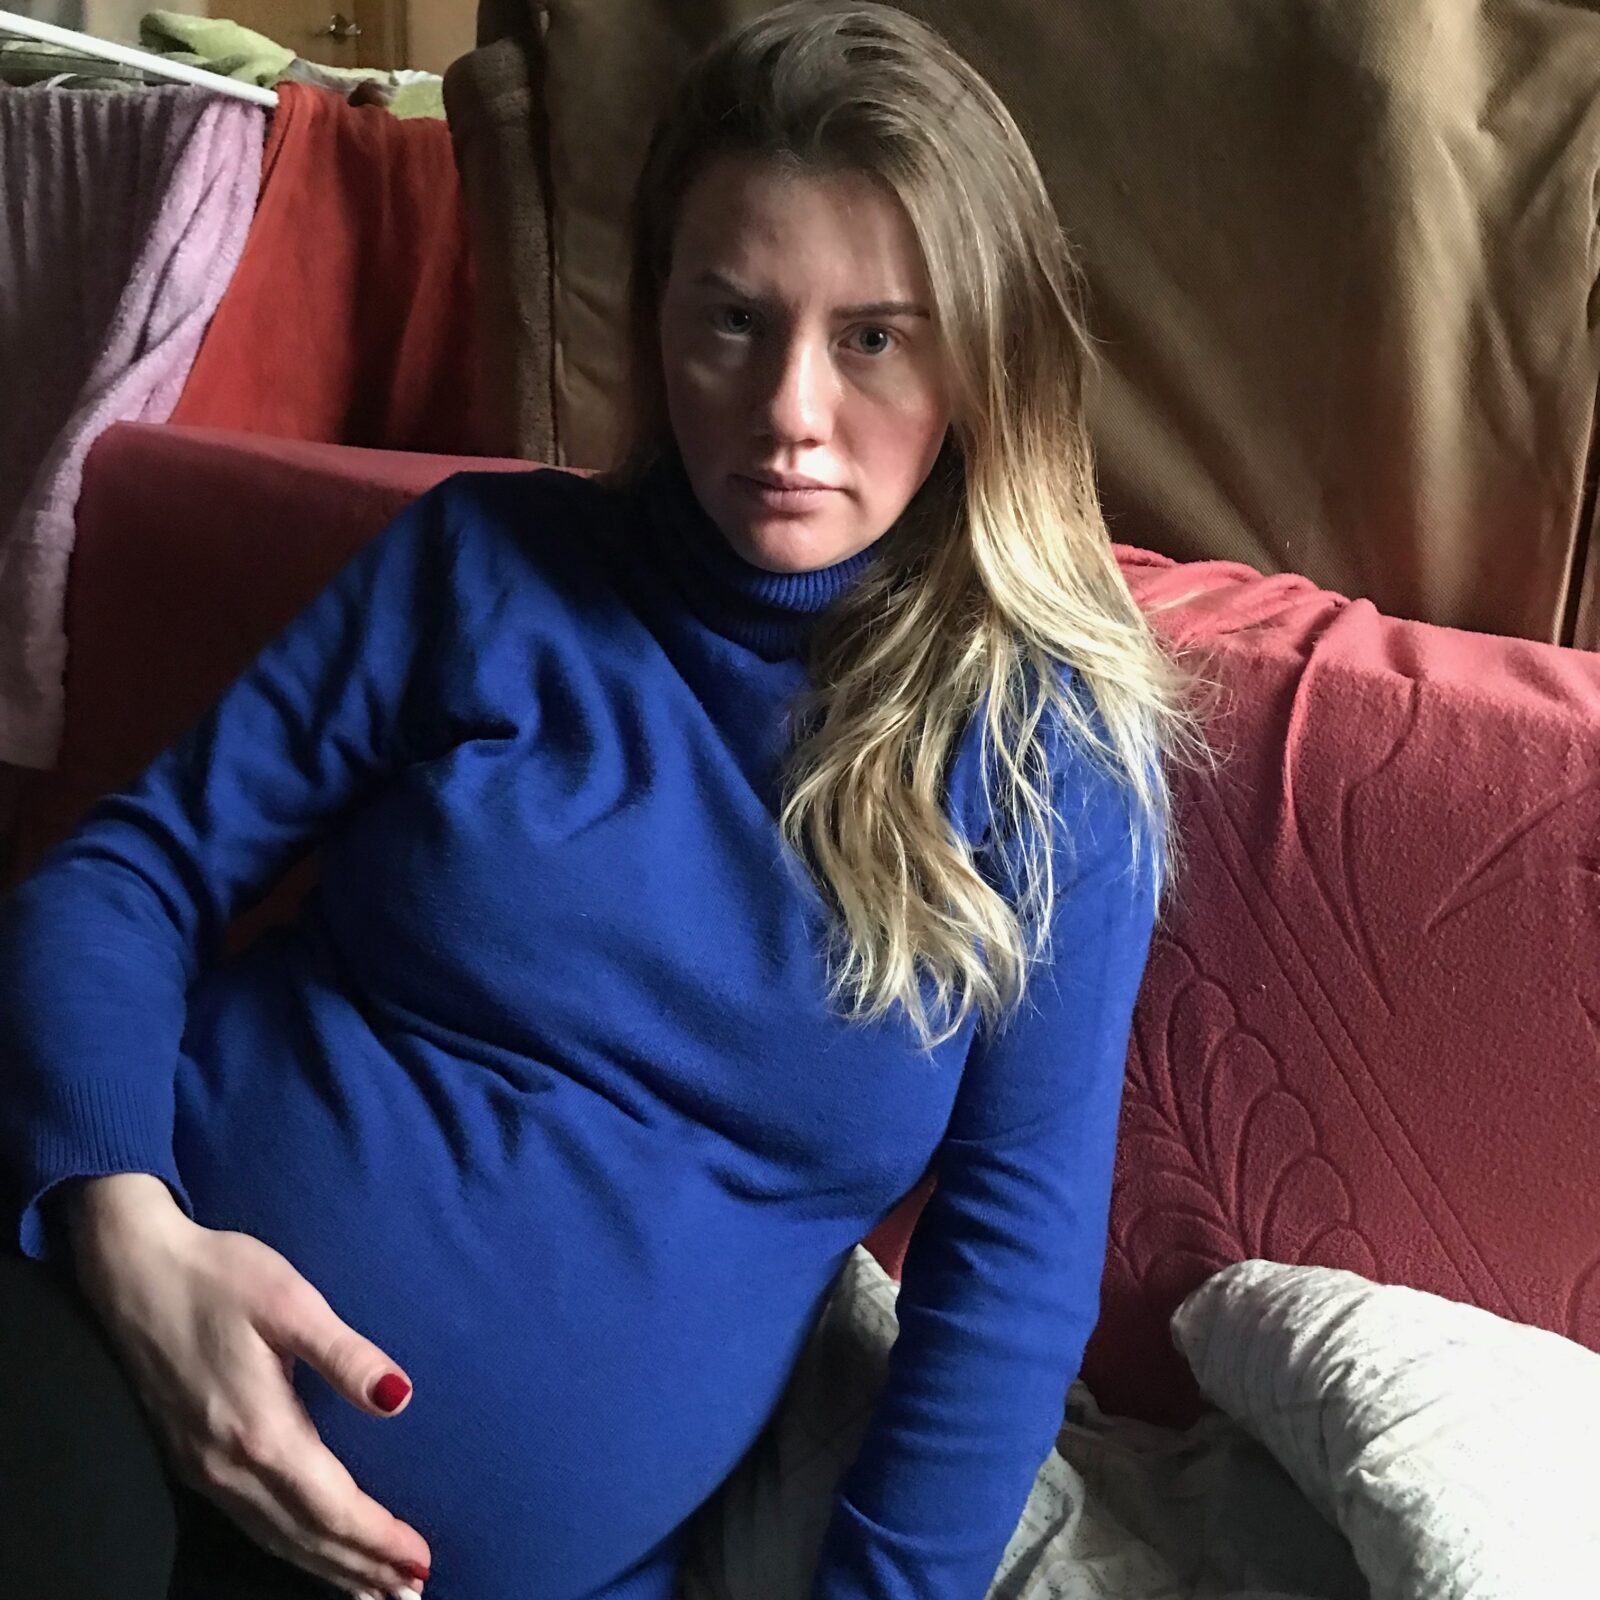 “Mi mayor temor es no poder volver a ver a mi familia y amigos”, Mariana, 26, Kyiv